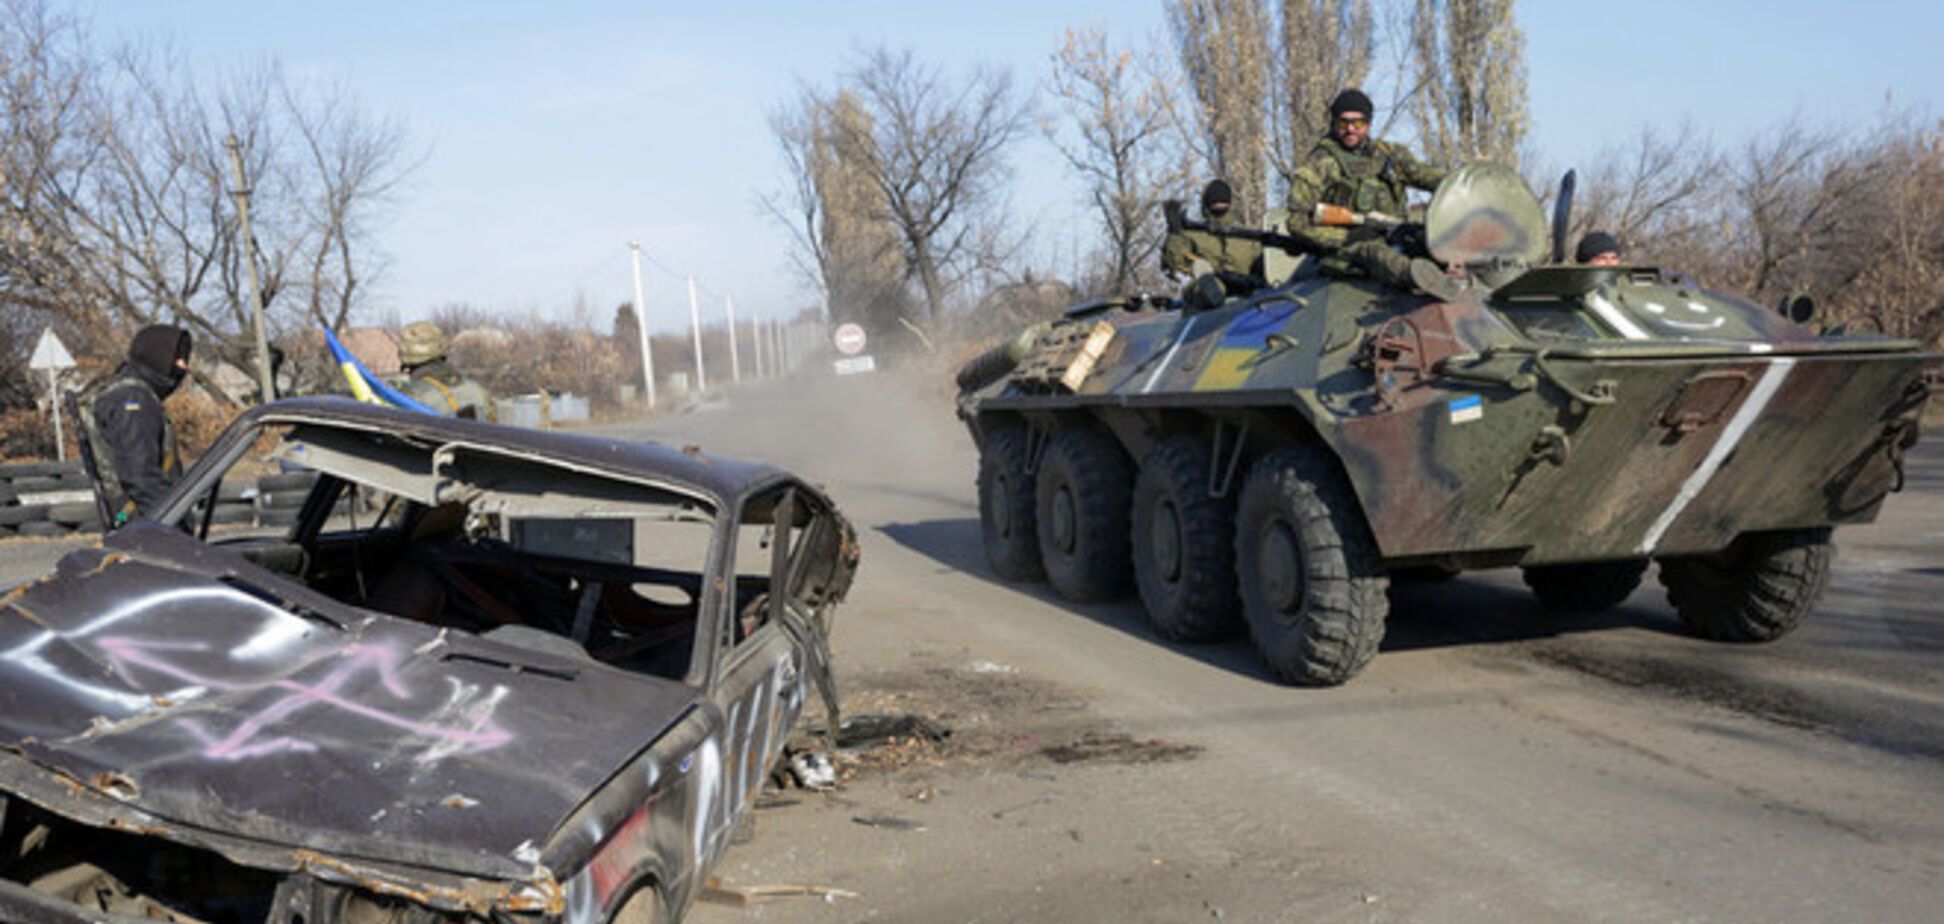 СМИ сообщили о гибели трех украинских воинов в зоне АТО за сутки